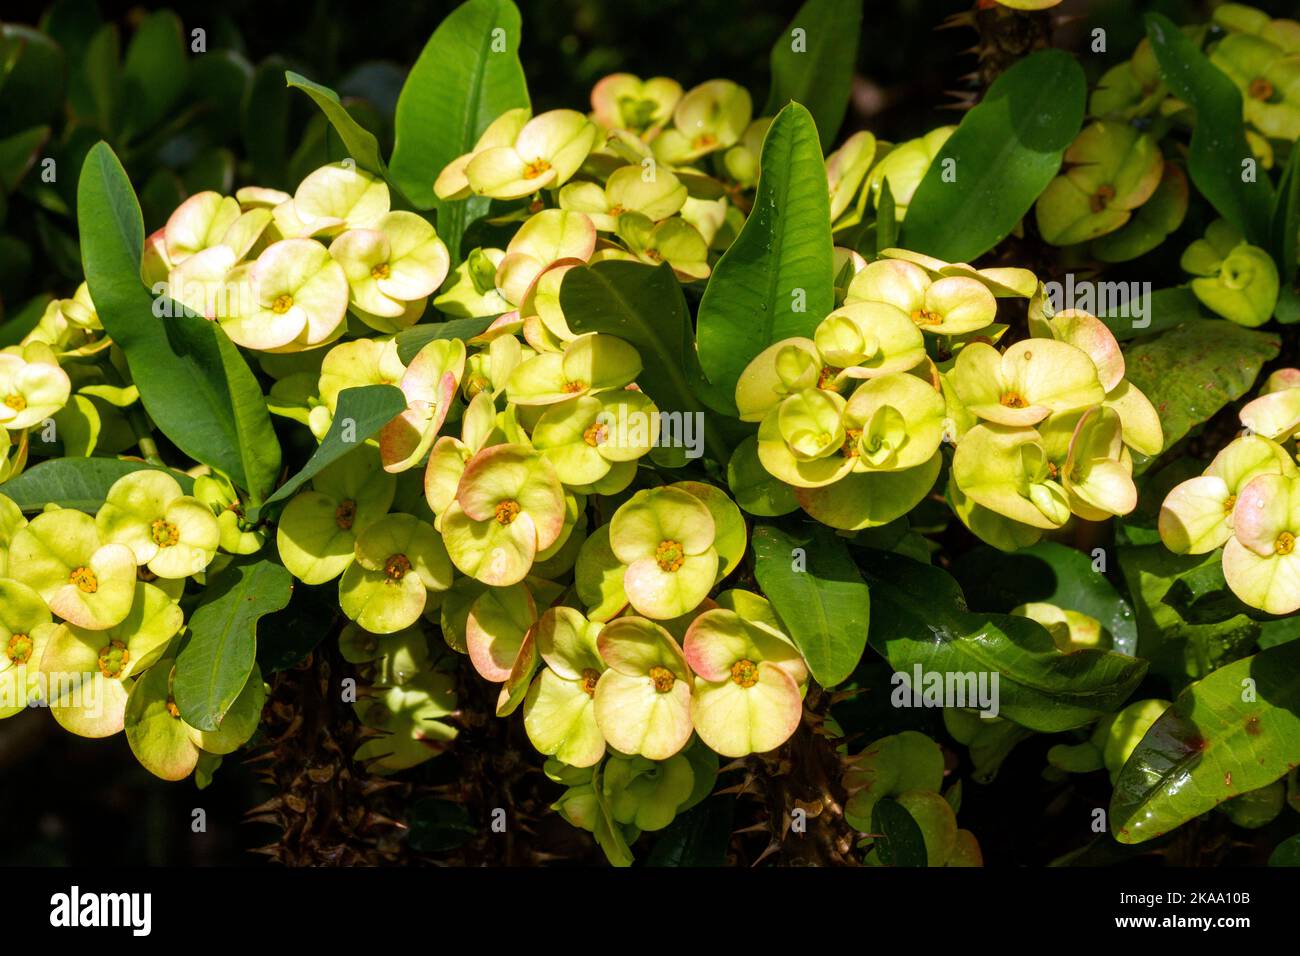 Primo piano del fiore giallo della spina di Cristo (Euphorbia Milli Desmoul) a Sydney, NSW, Australia (Foto di Tara Chand Malhotra) Foto Stock